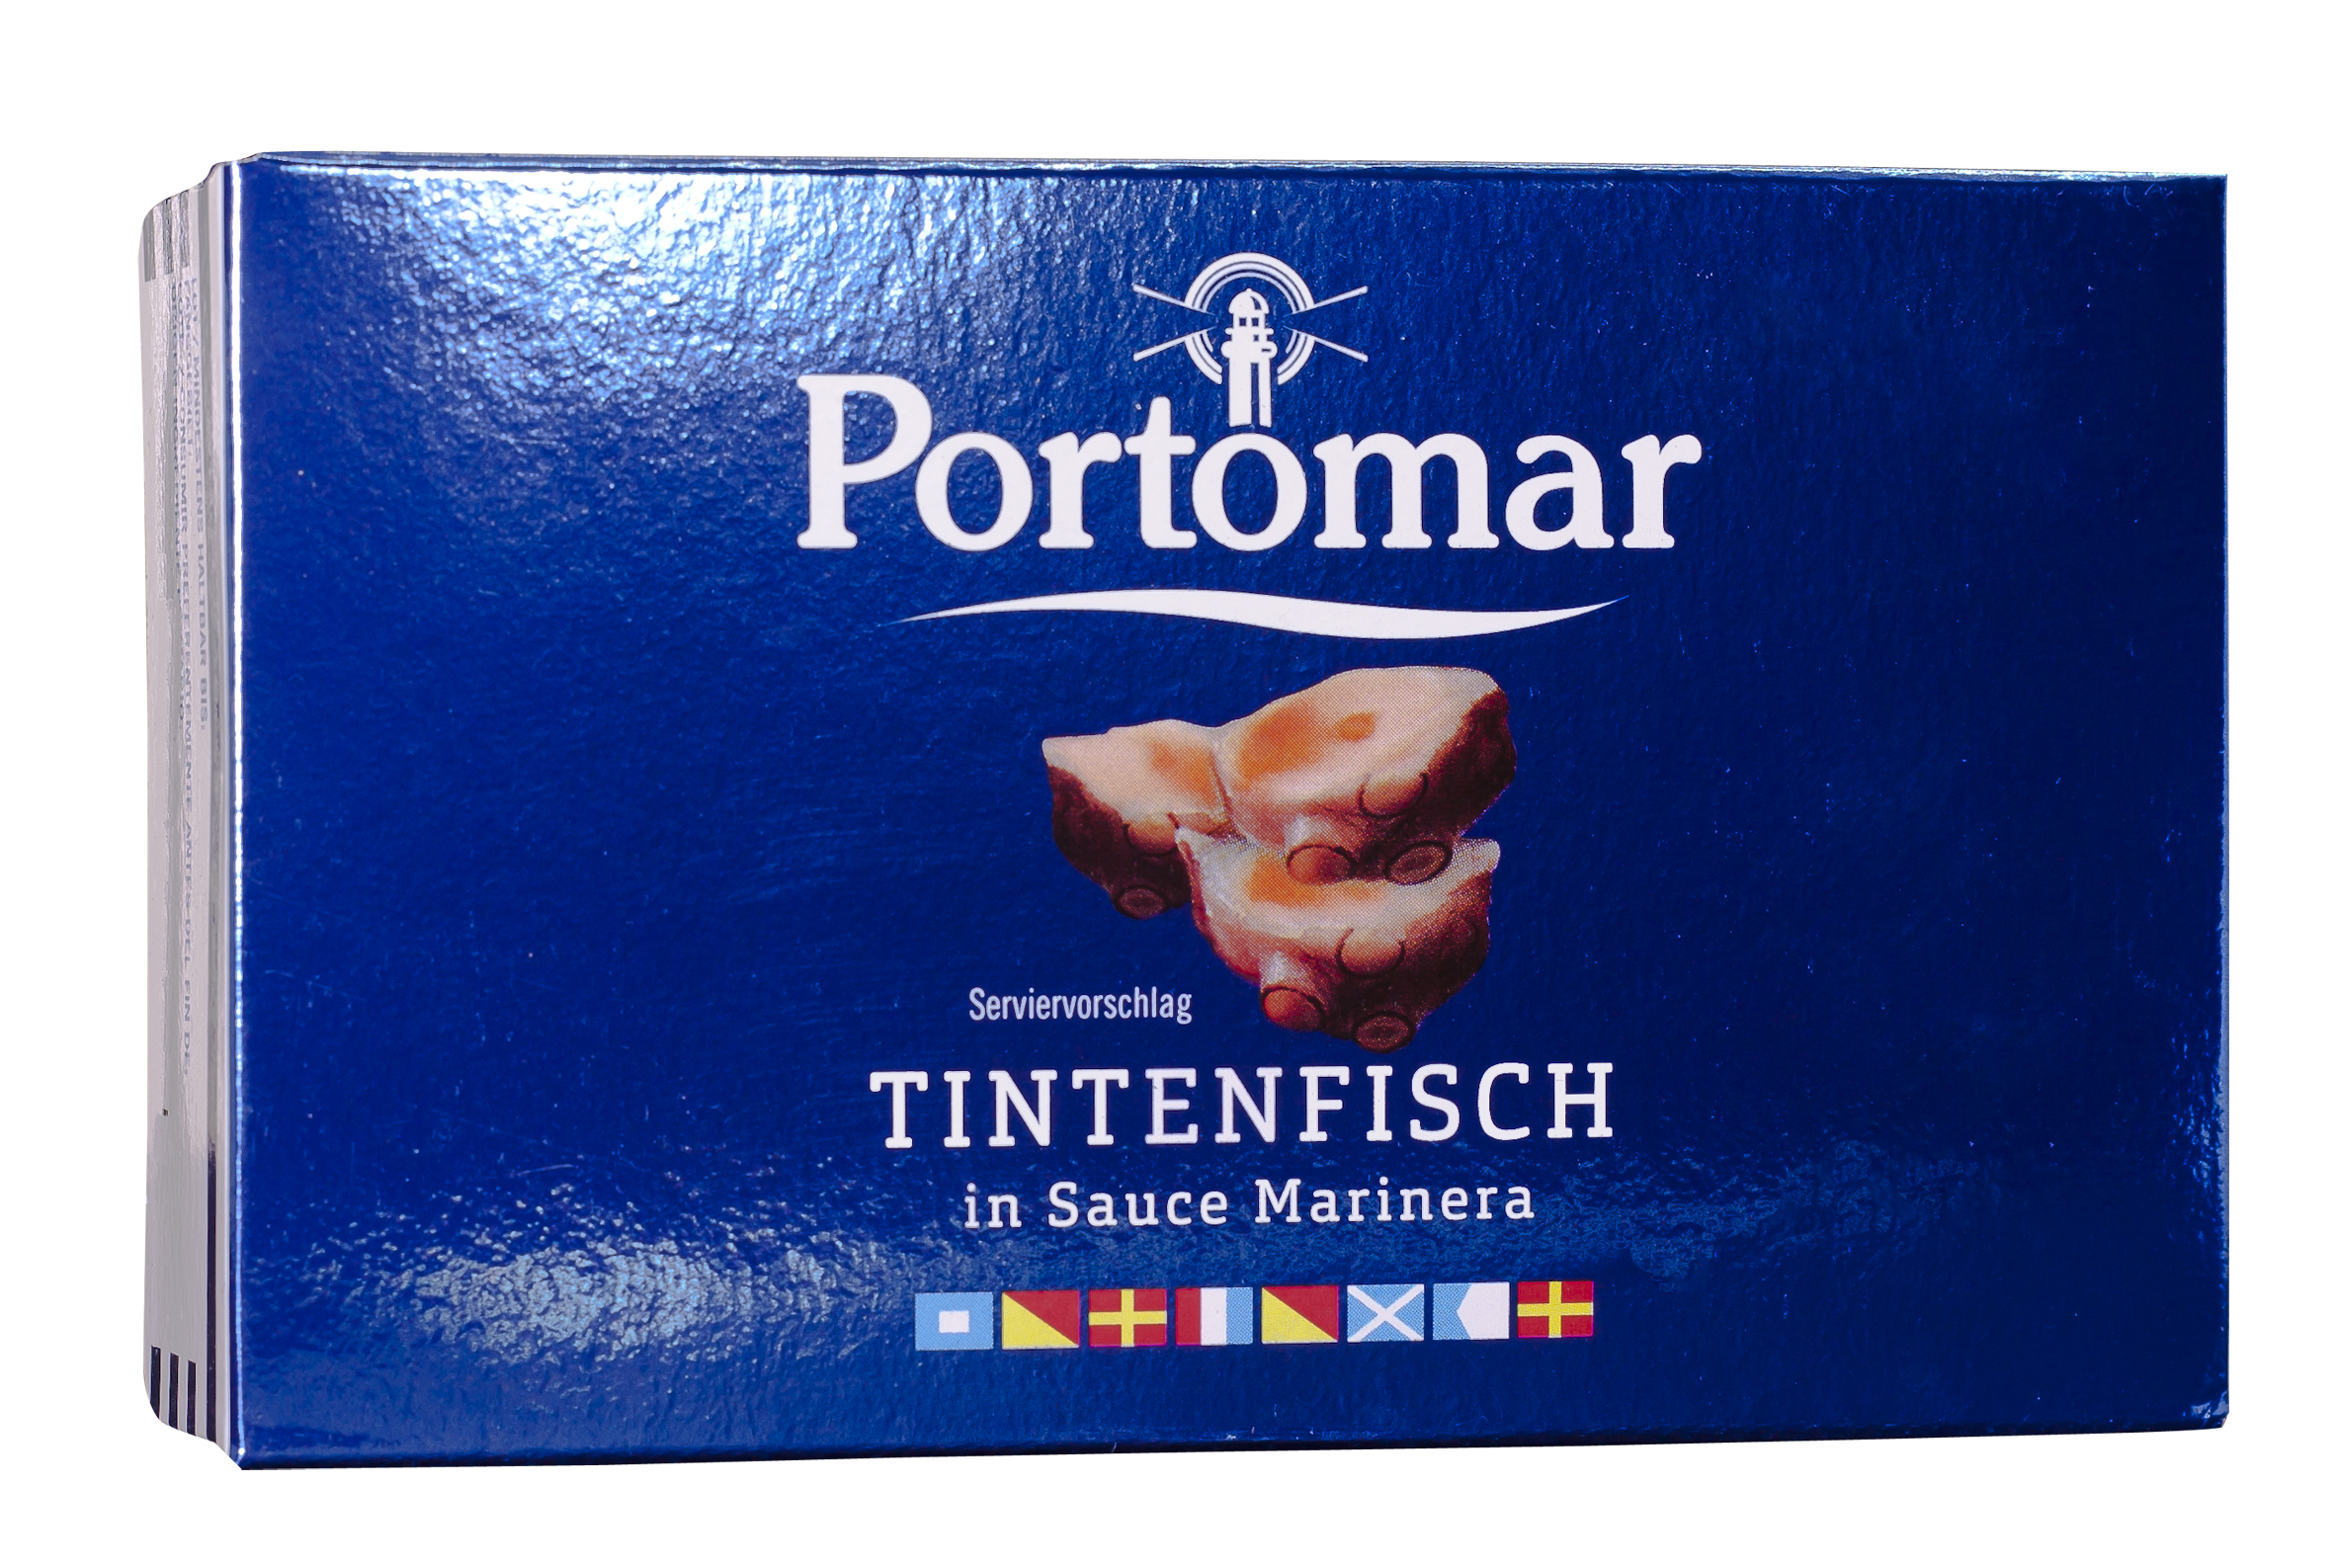  Tintenfisch Sauce Marinera